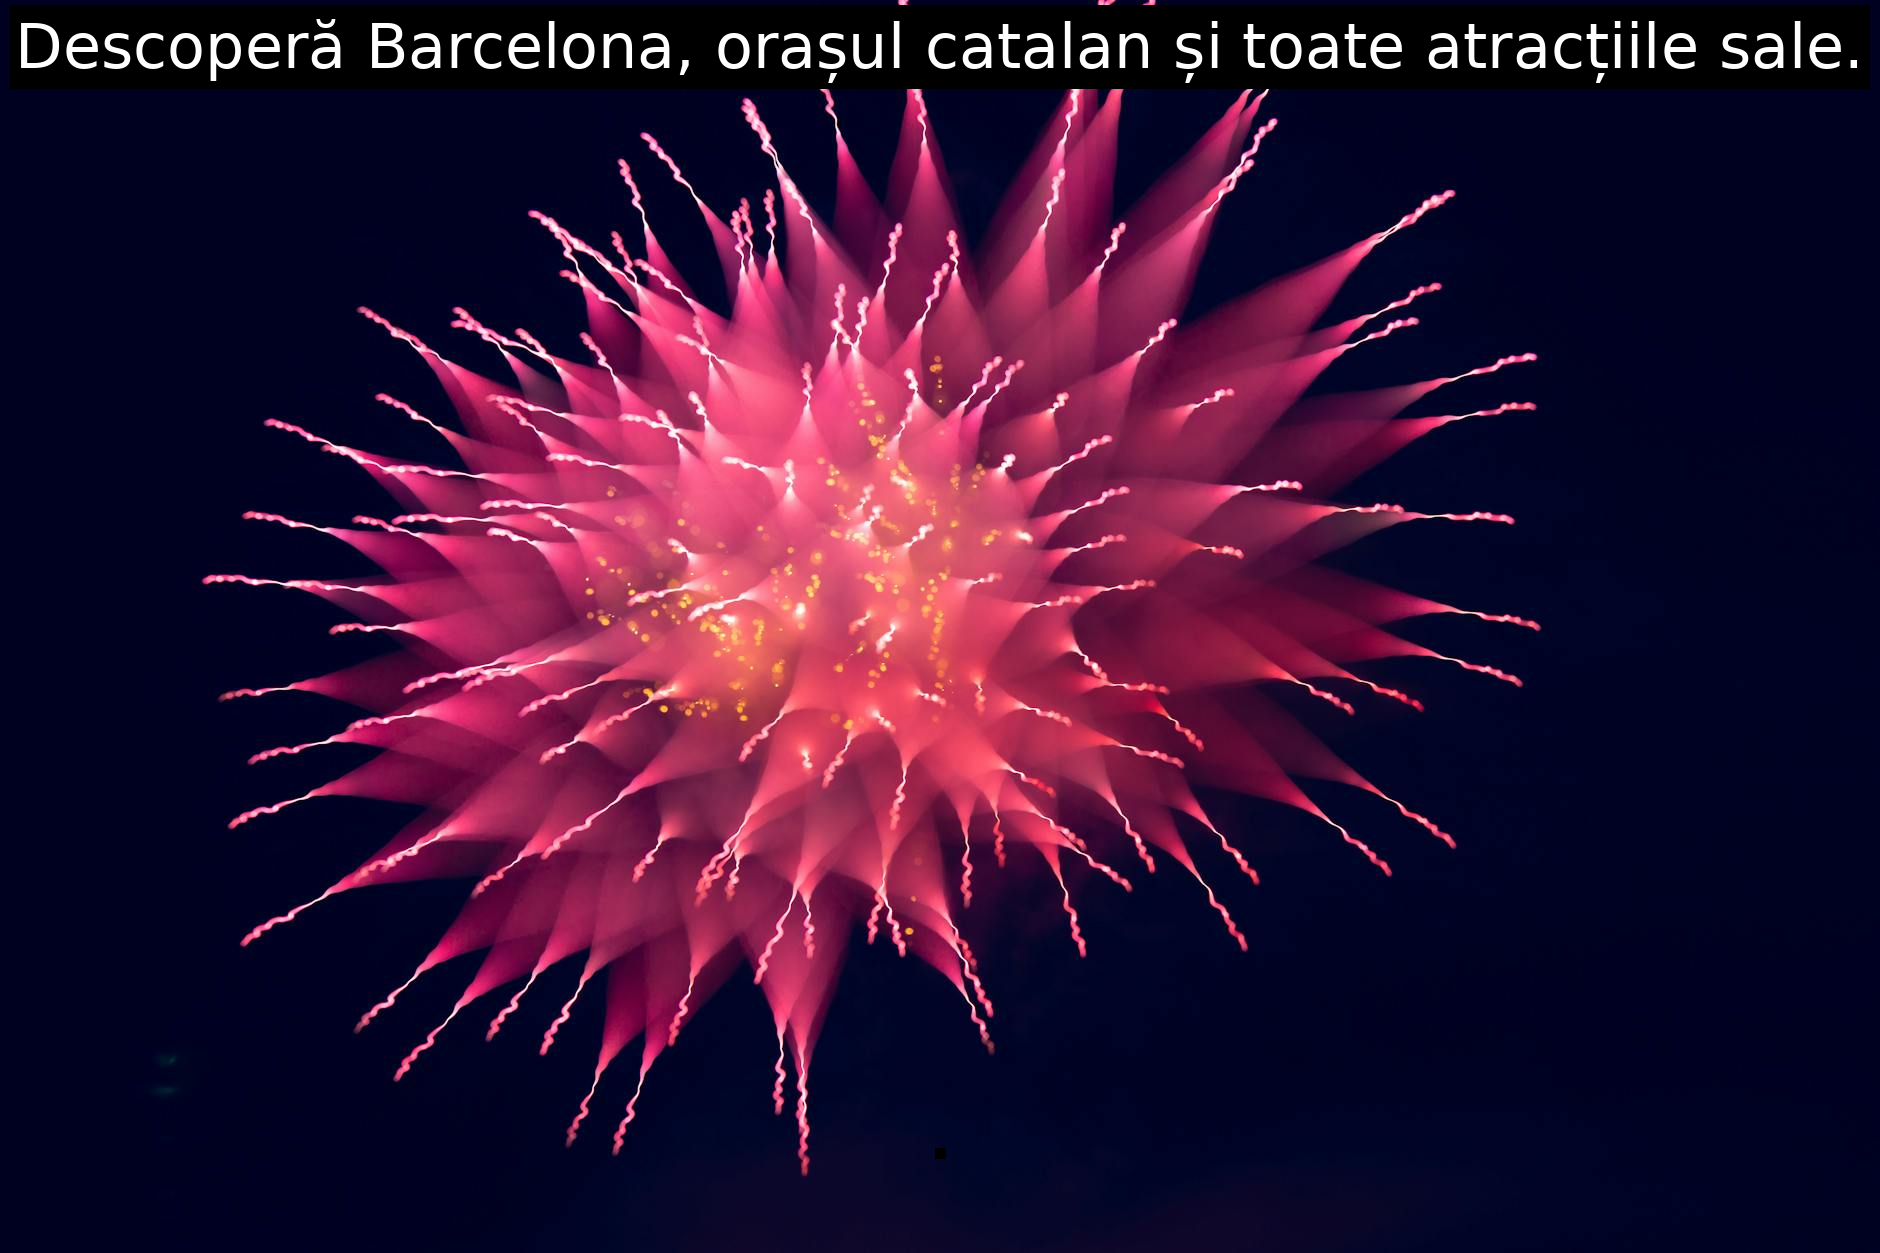 Descoperă Barcelona, orașul catalan și toate atracțiile sale.